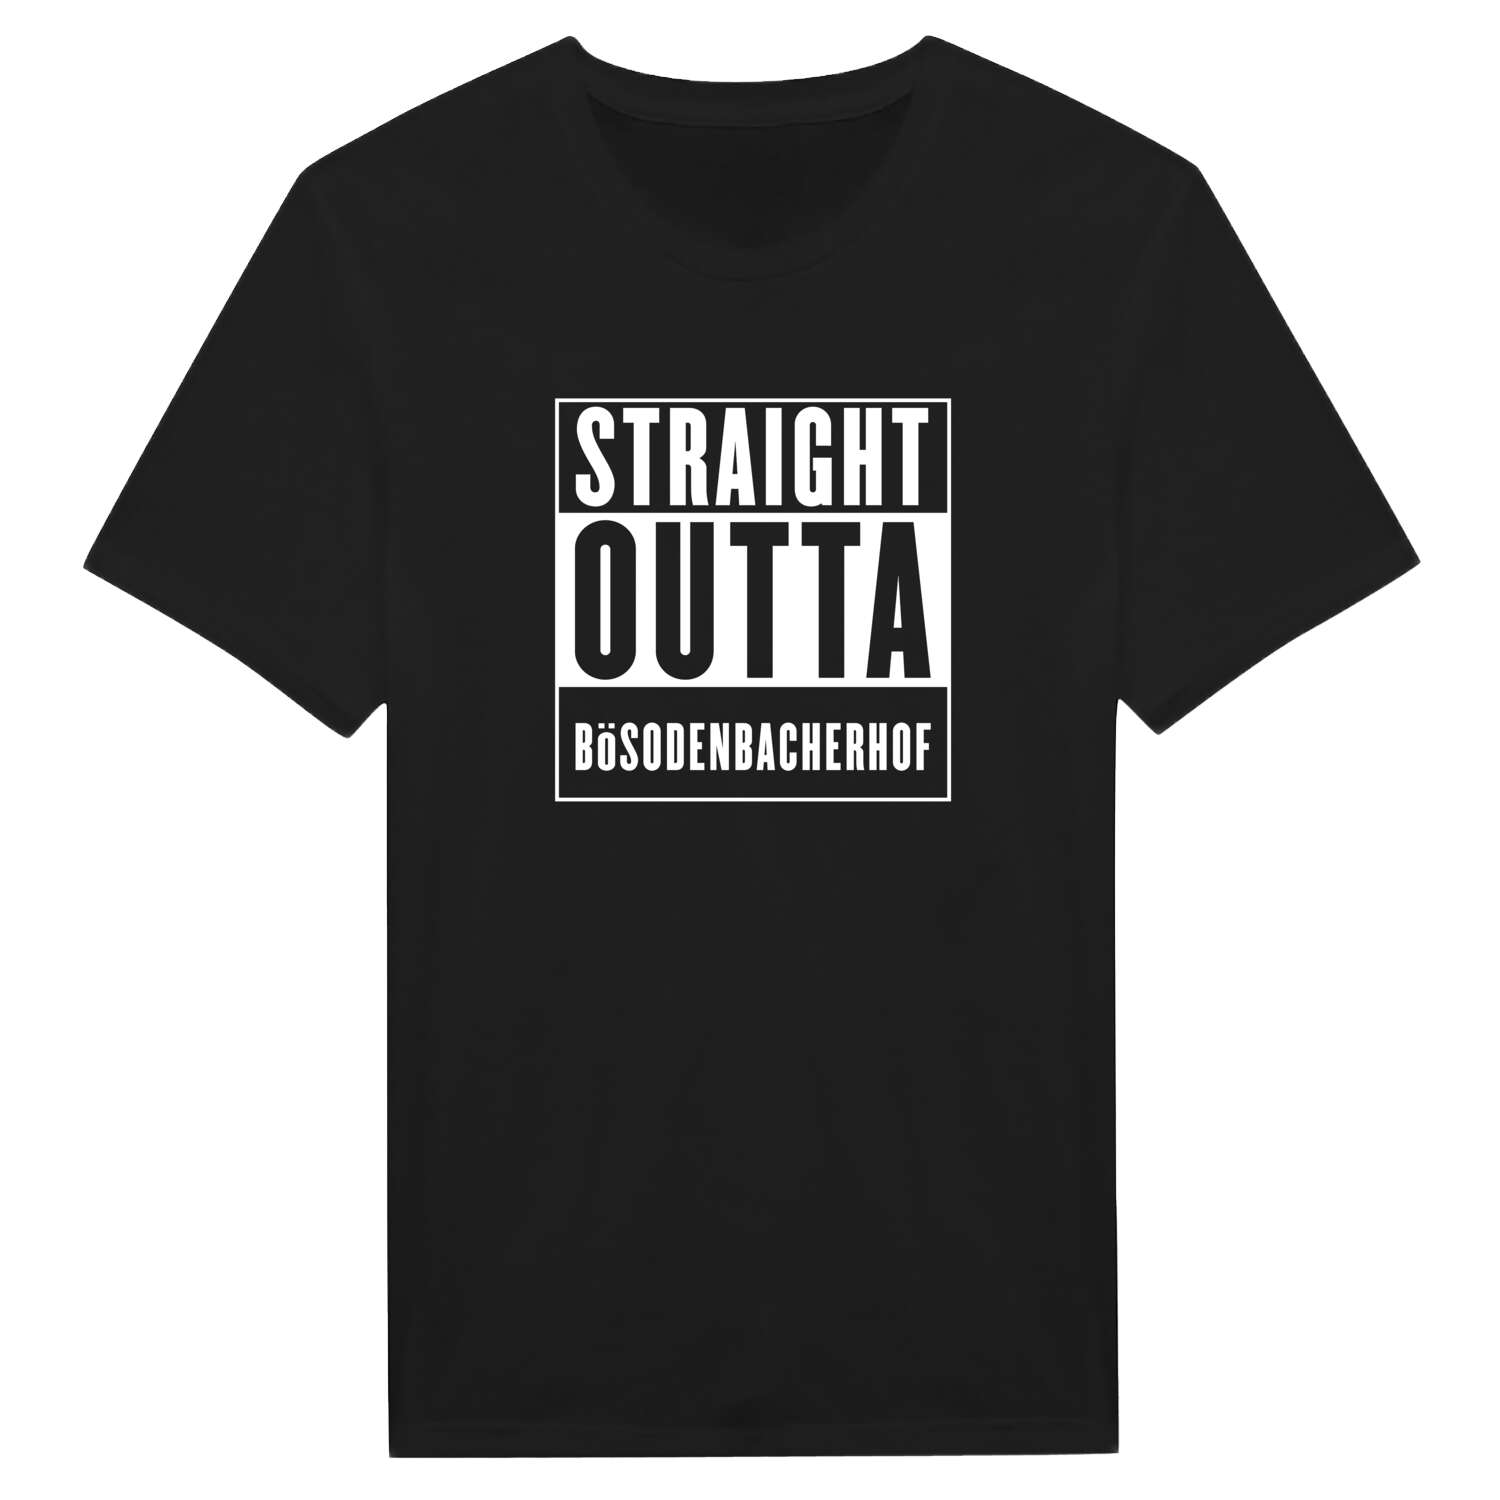 Bösodenbacherhof T-Shirt »Straight Outta«